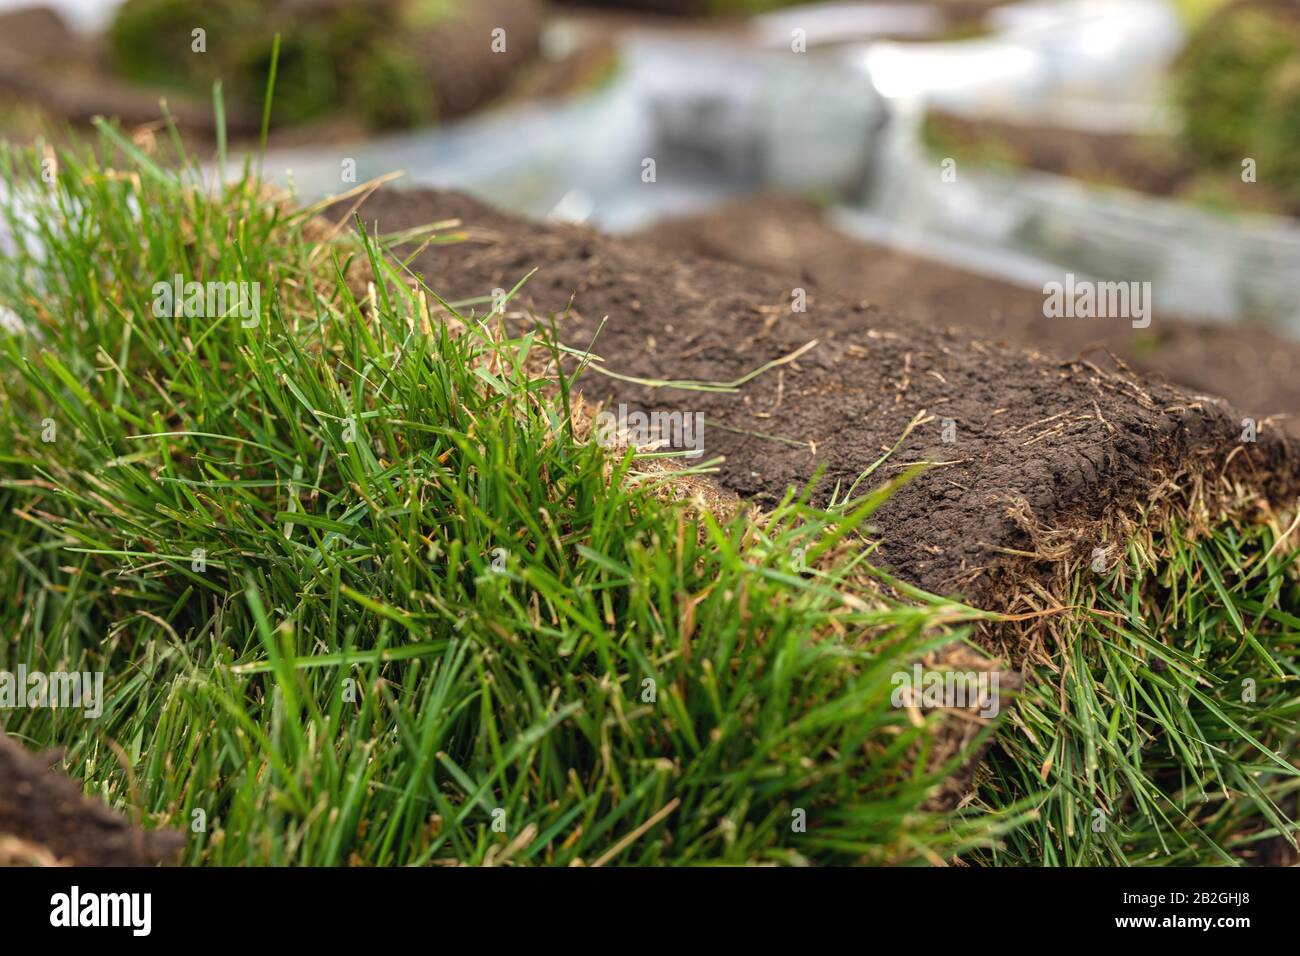 Turf rotolo di erba, erba verde tappeto in rotolo per prato. Pila di tappeto erboso rotoli di erba per la sistemazione paesaggistica. Foto Stock